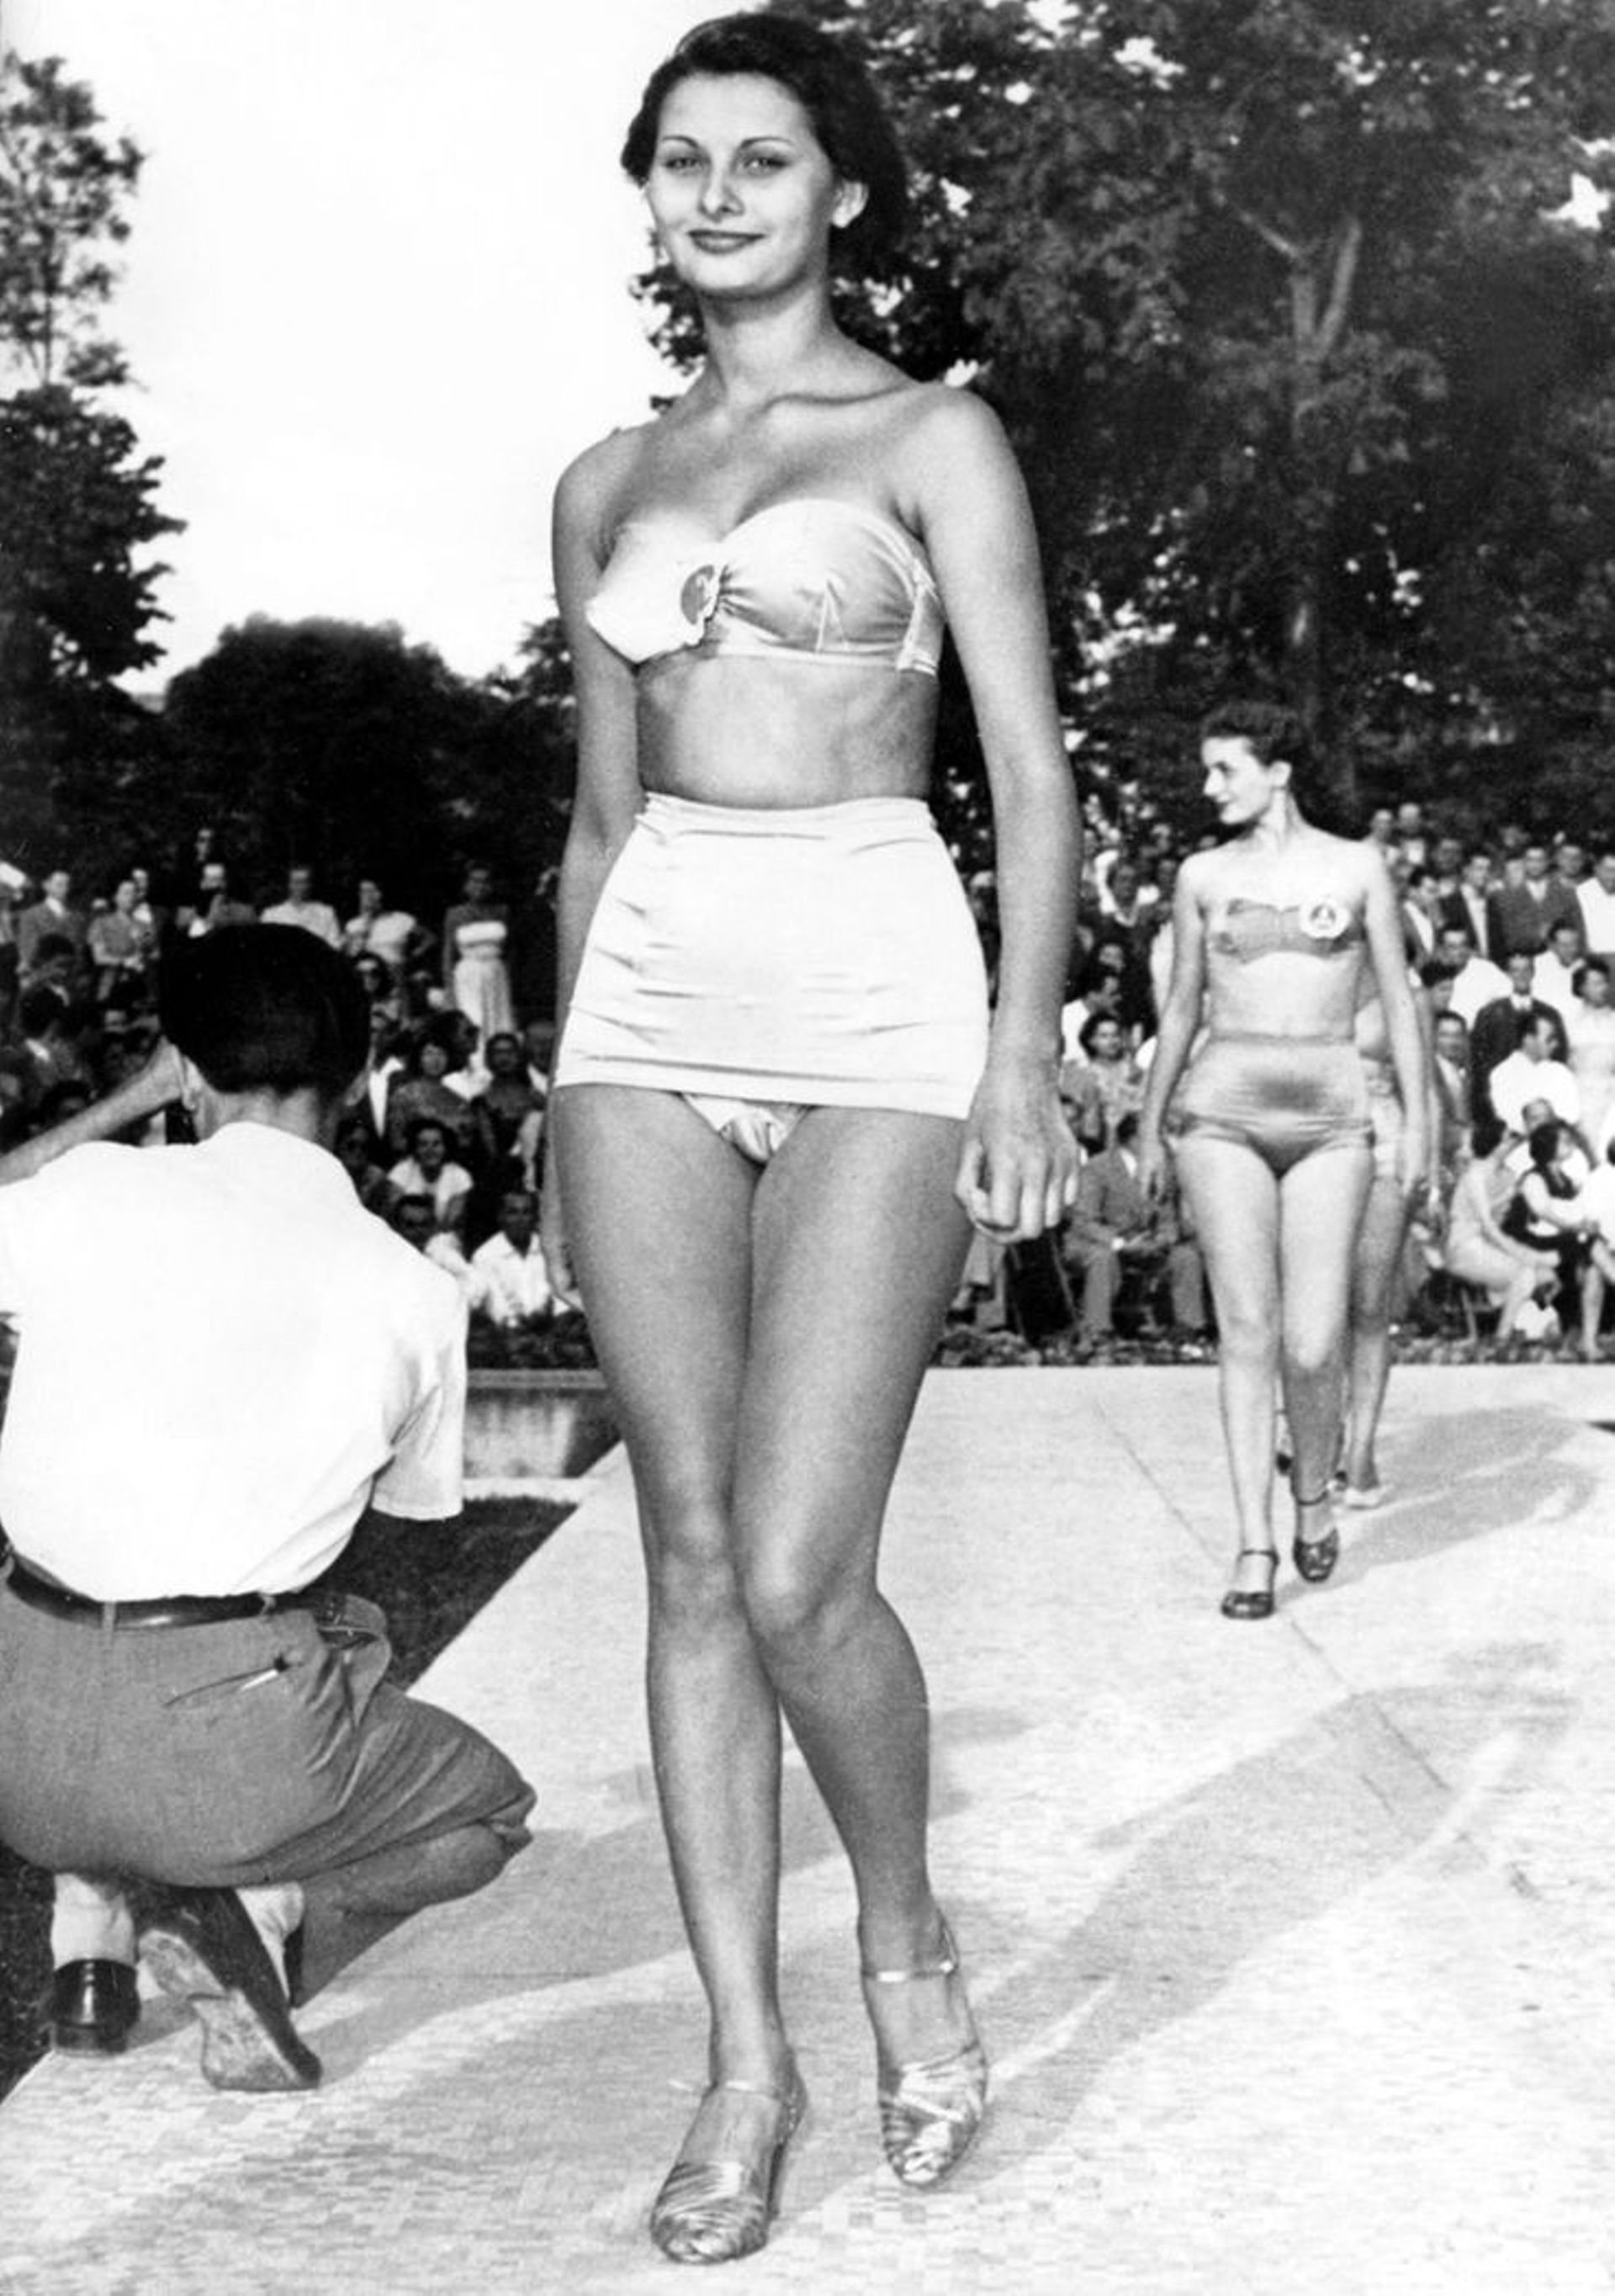 Sofia Scicolone, alors âgée de 15 ans, lors d’un concours de beauté à Naples en 1950.